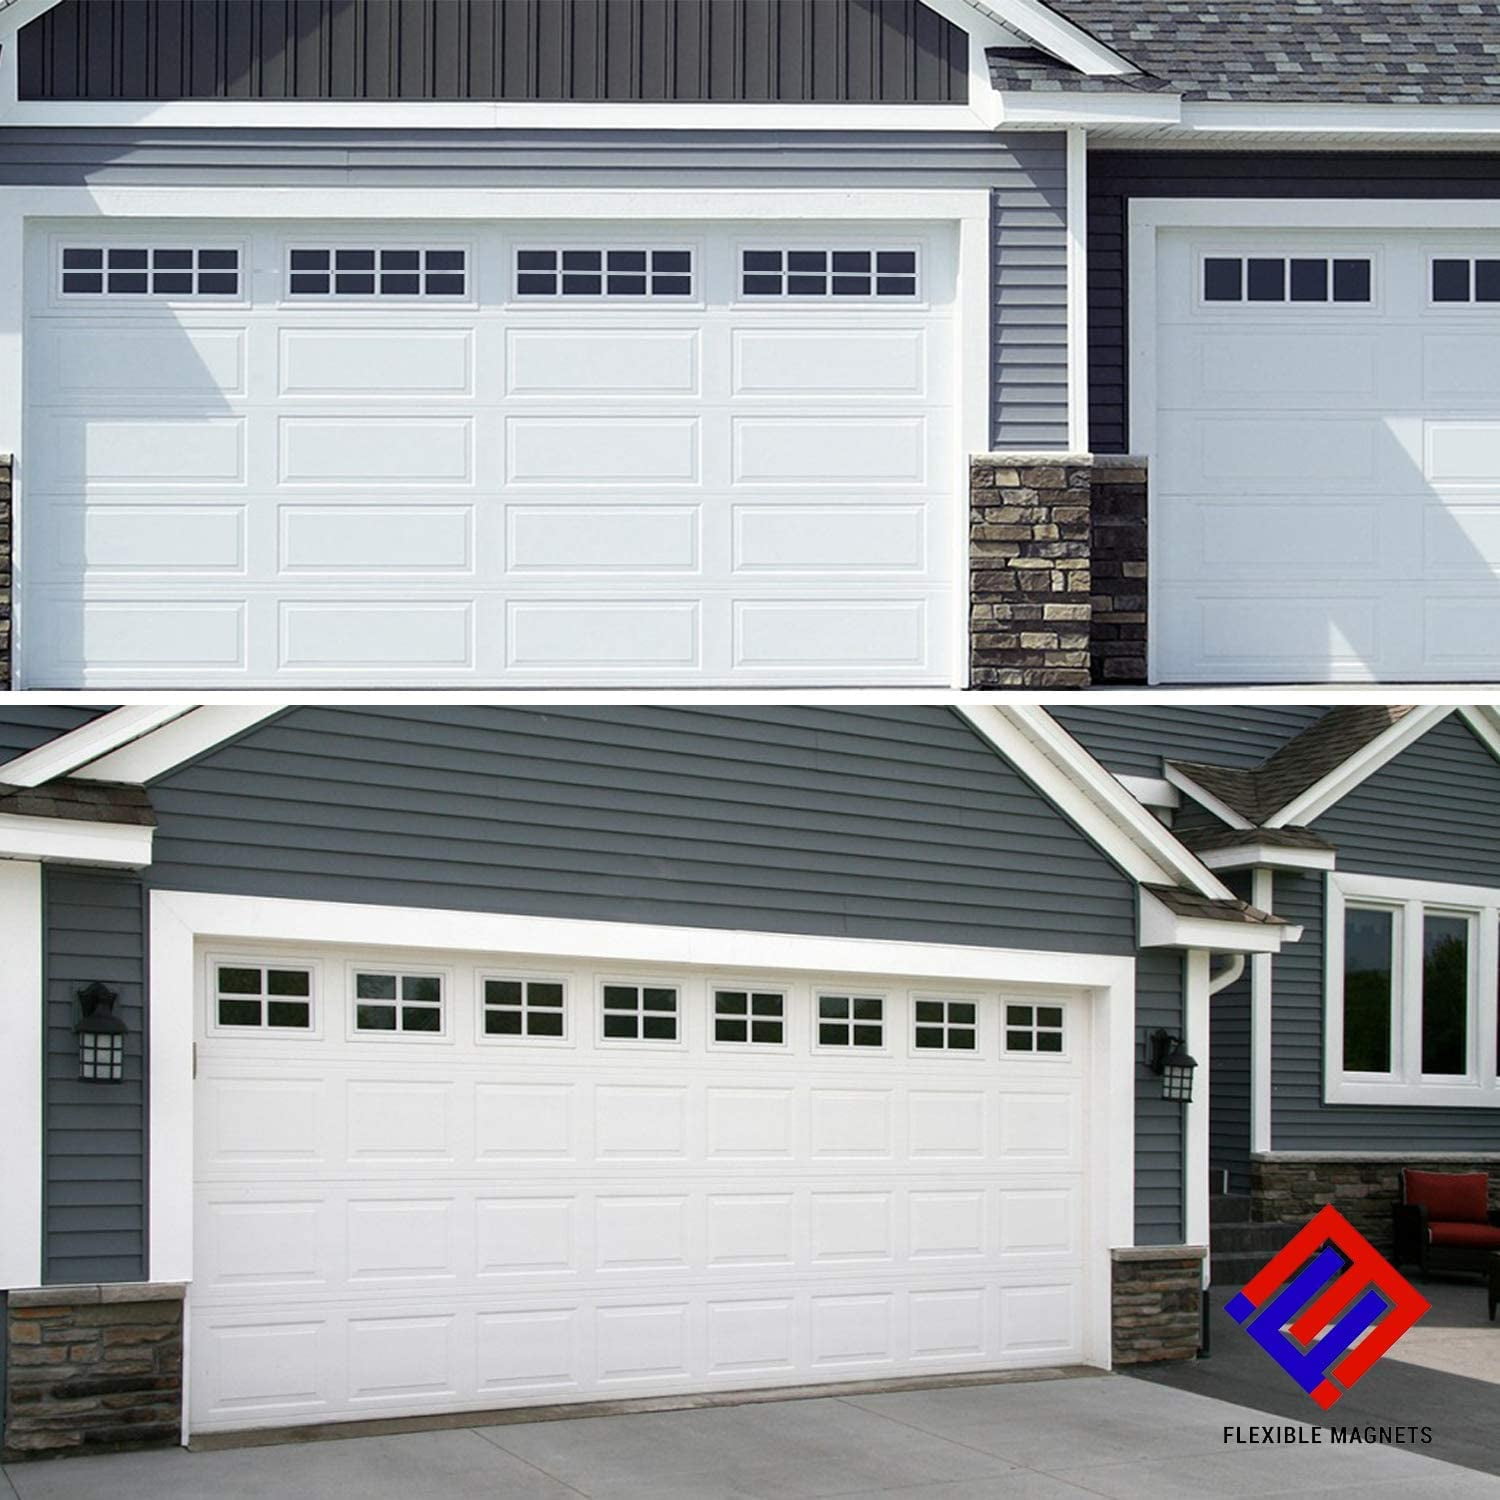 Details about   DURA-LIFT Premium Garage Door-Hardware Installation Kit For 8 ft. x 7 ft. Door 